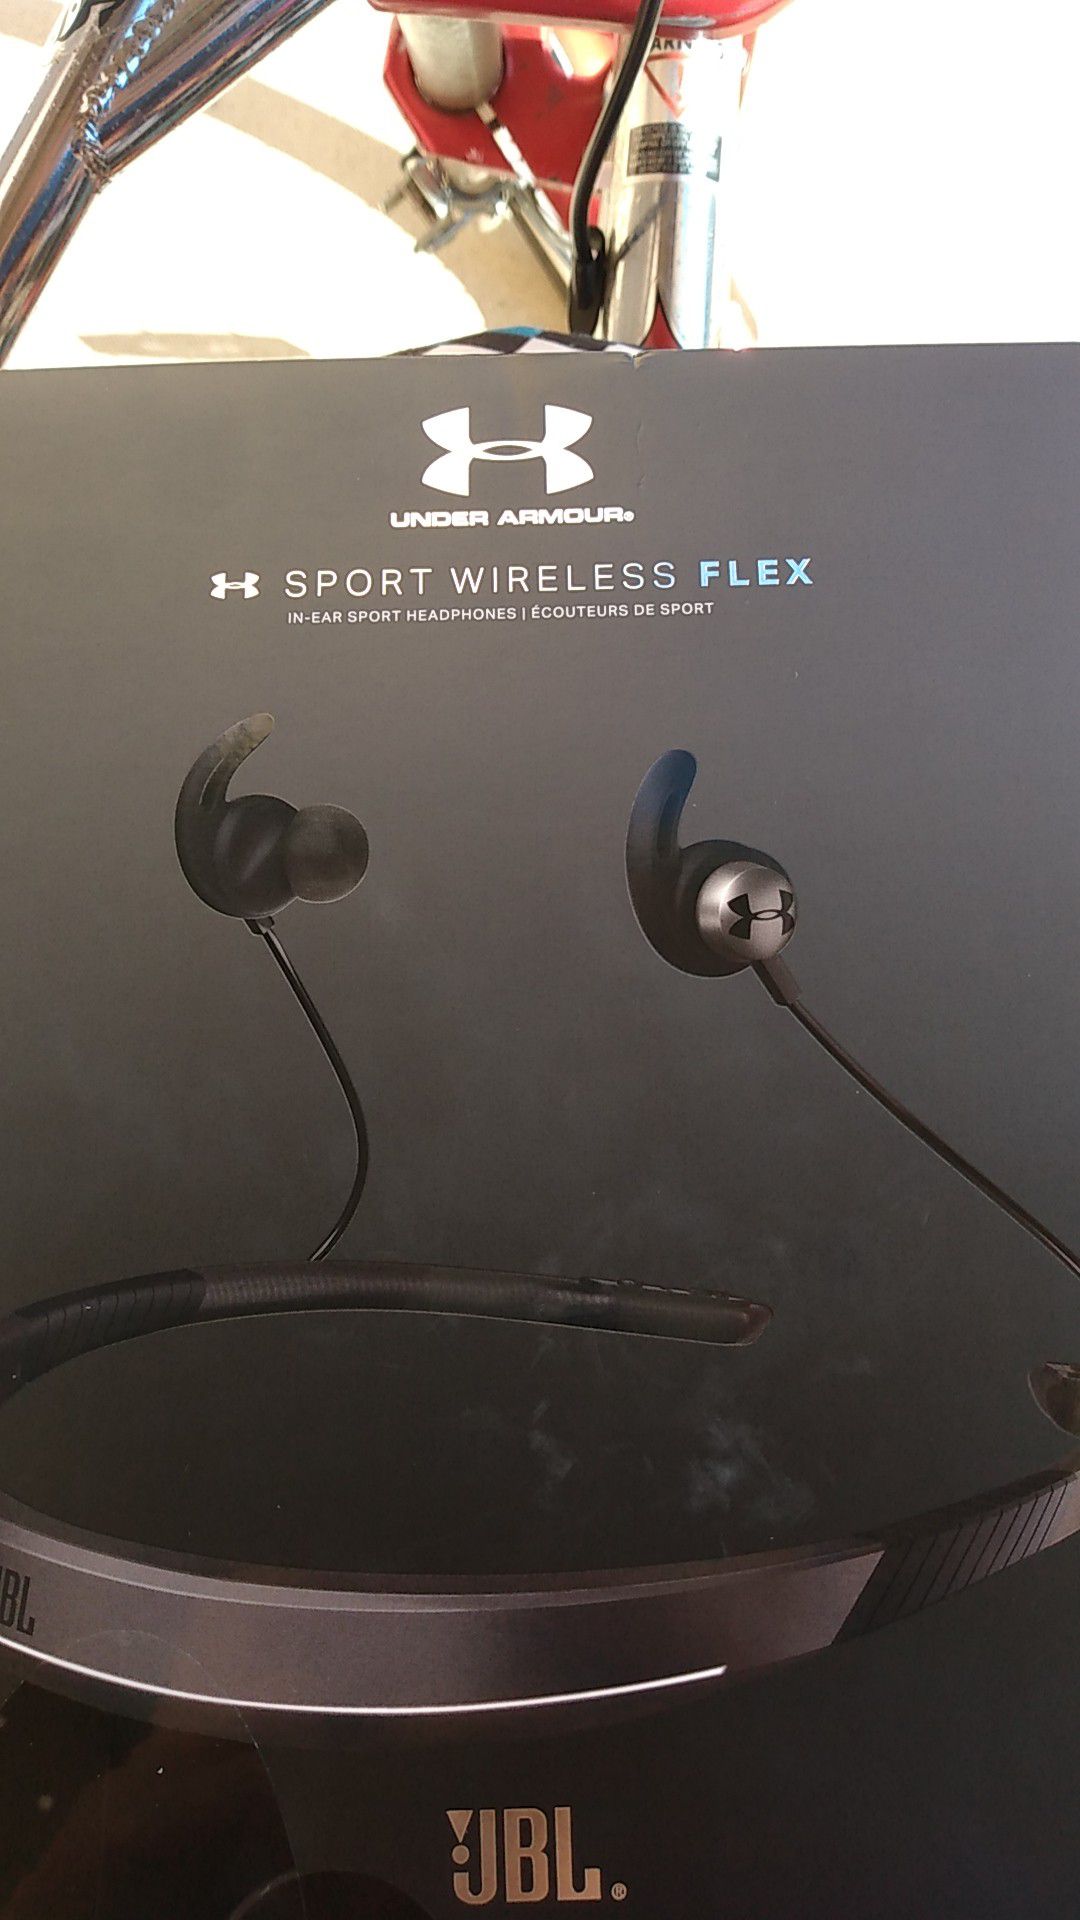 JBL sport wireless flex in-ear sport headphones, by under armour